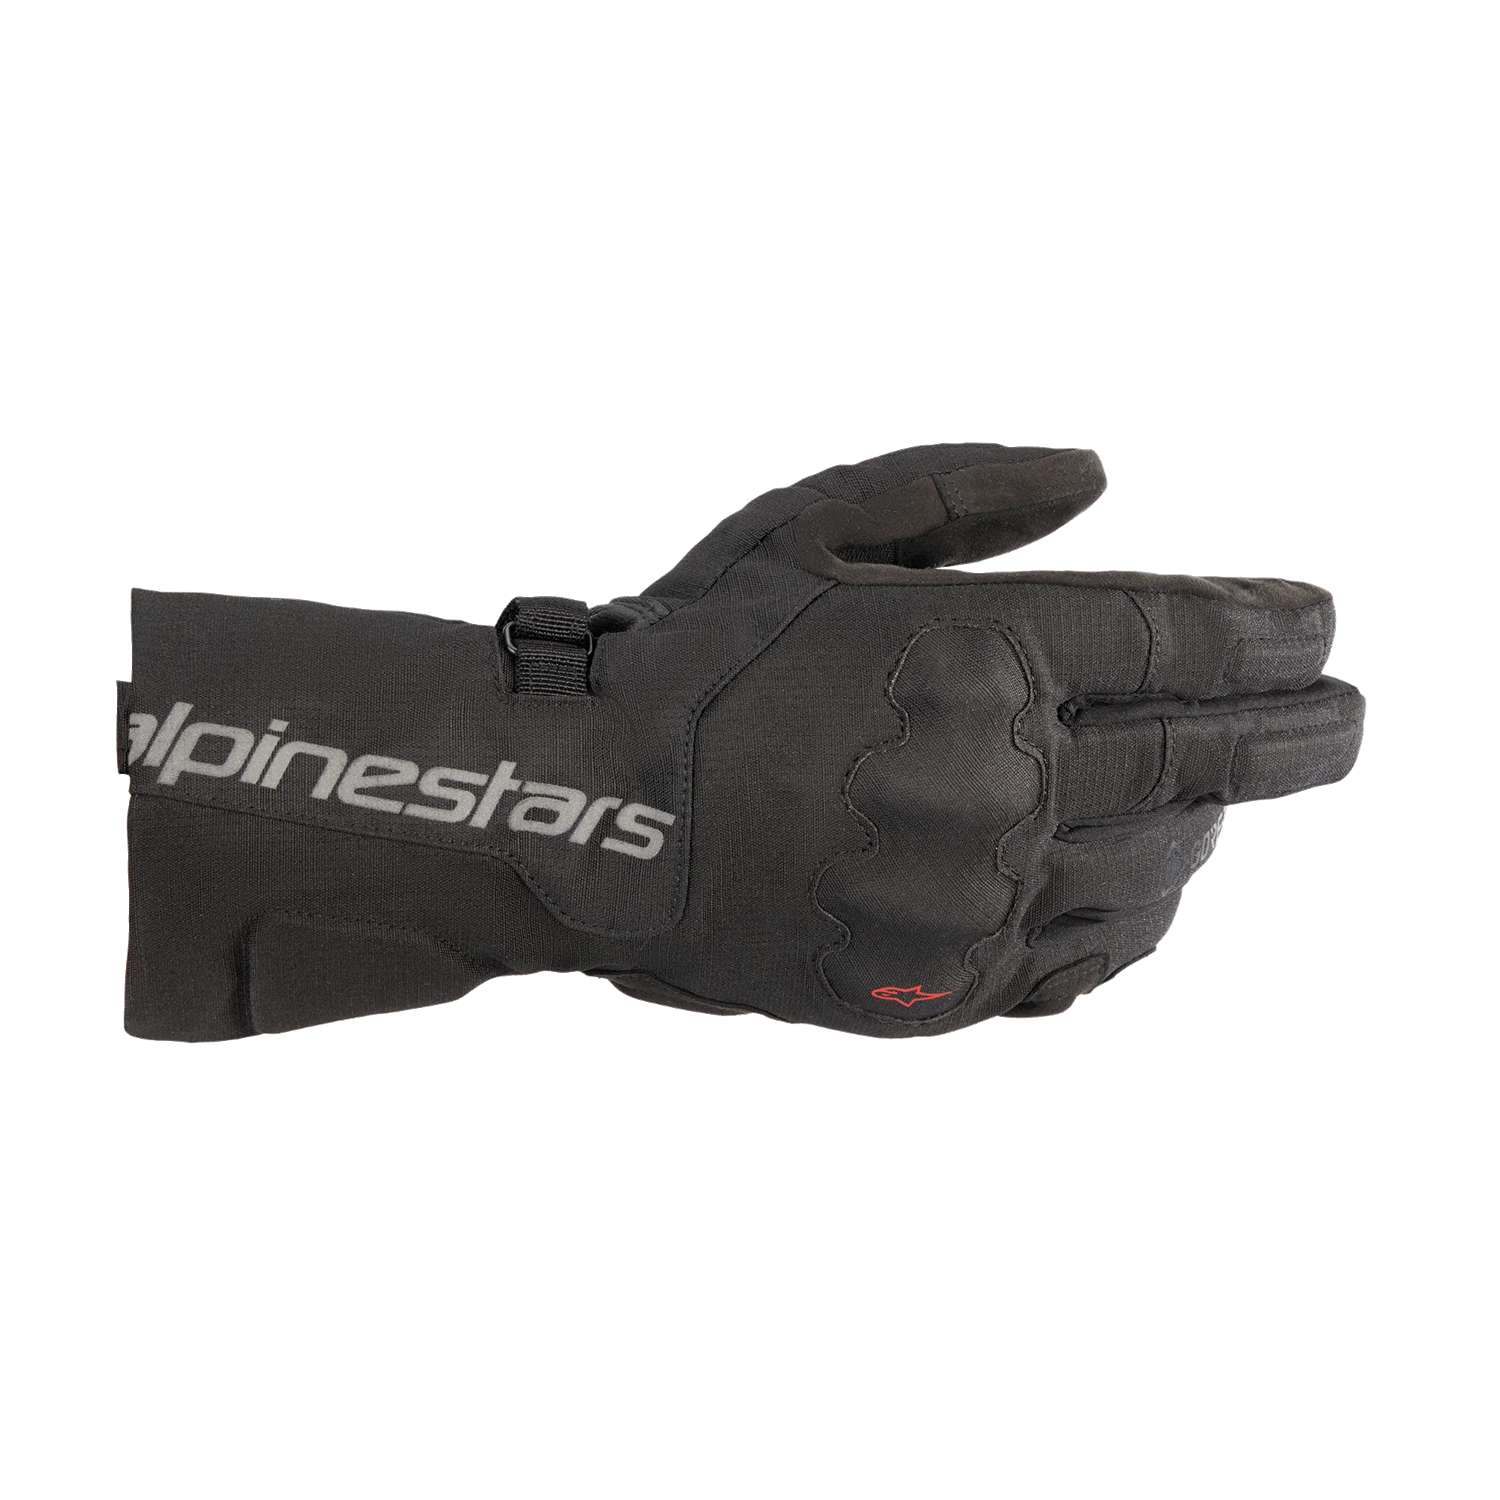 Image of Alpinestars Wr-X Gore-Tex Gloves Black Talla 3XL